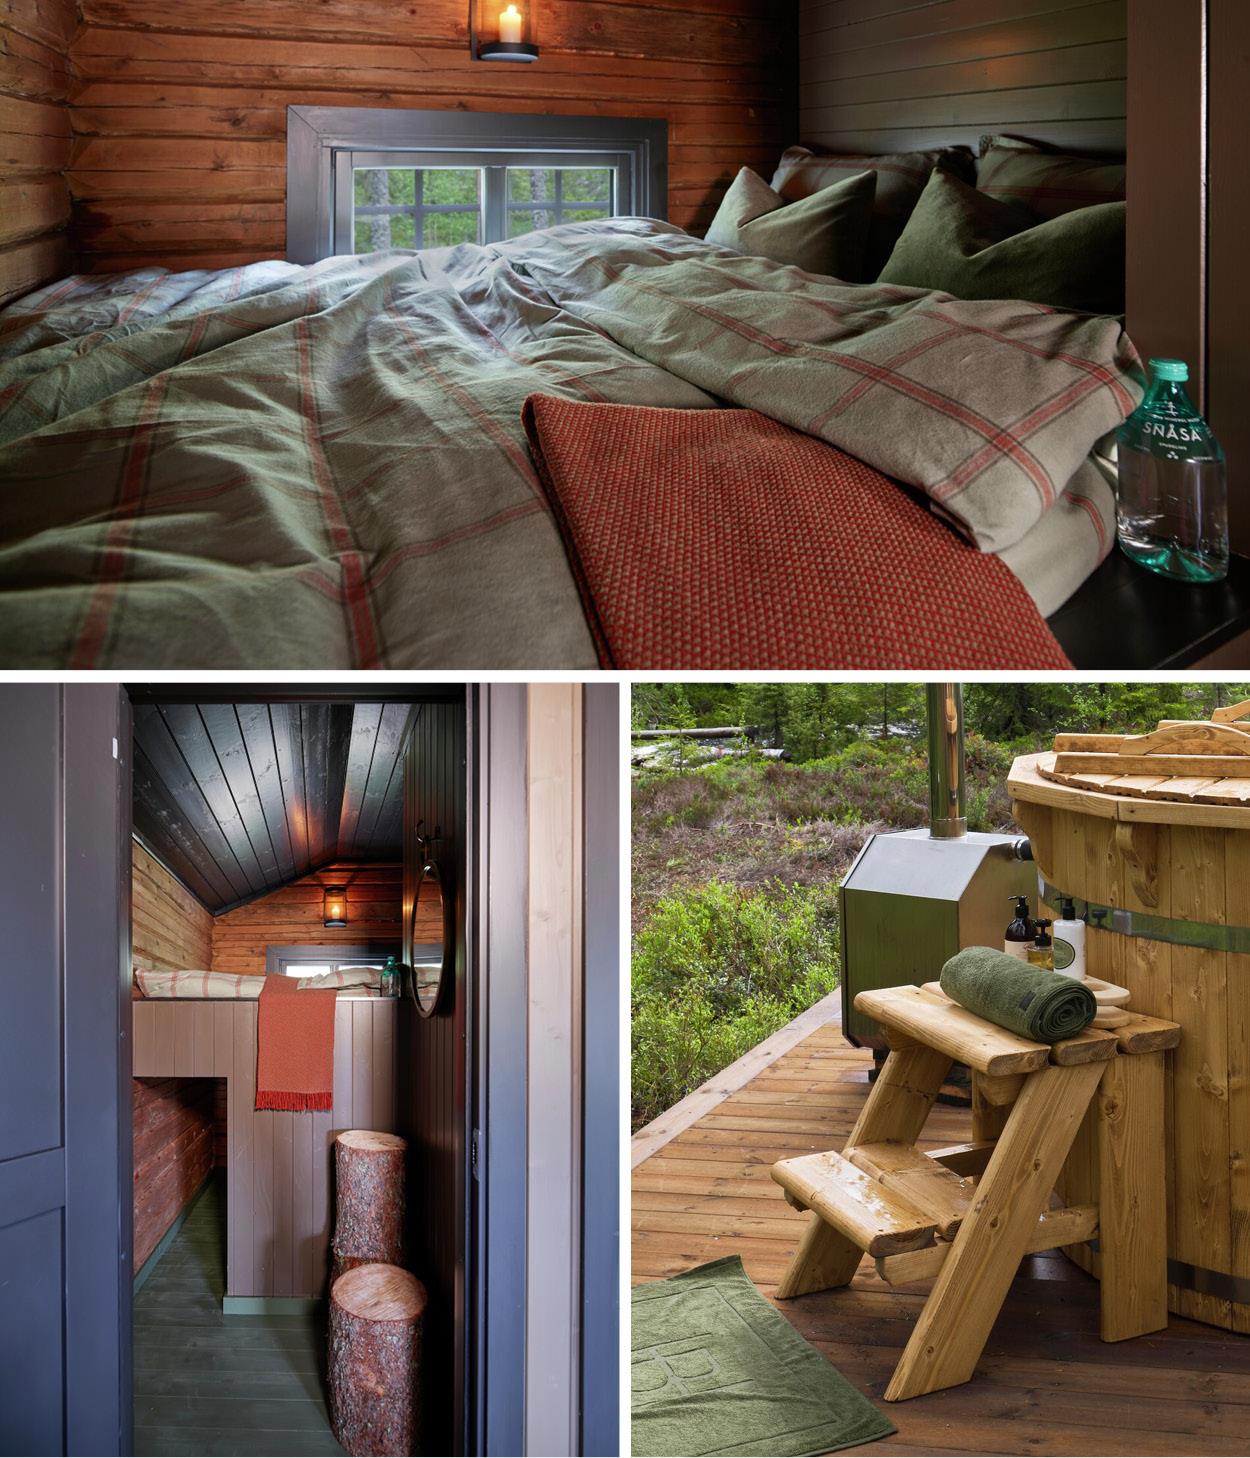 Detaljer fra soverom på hytte. Sengetøy i flanell fra Halvor Bakke. Bilde